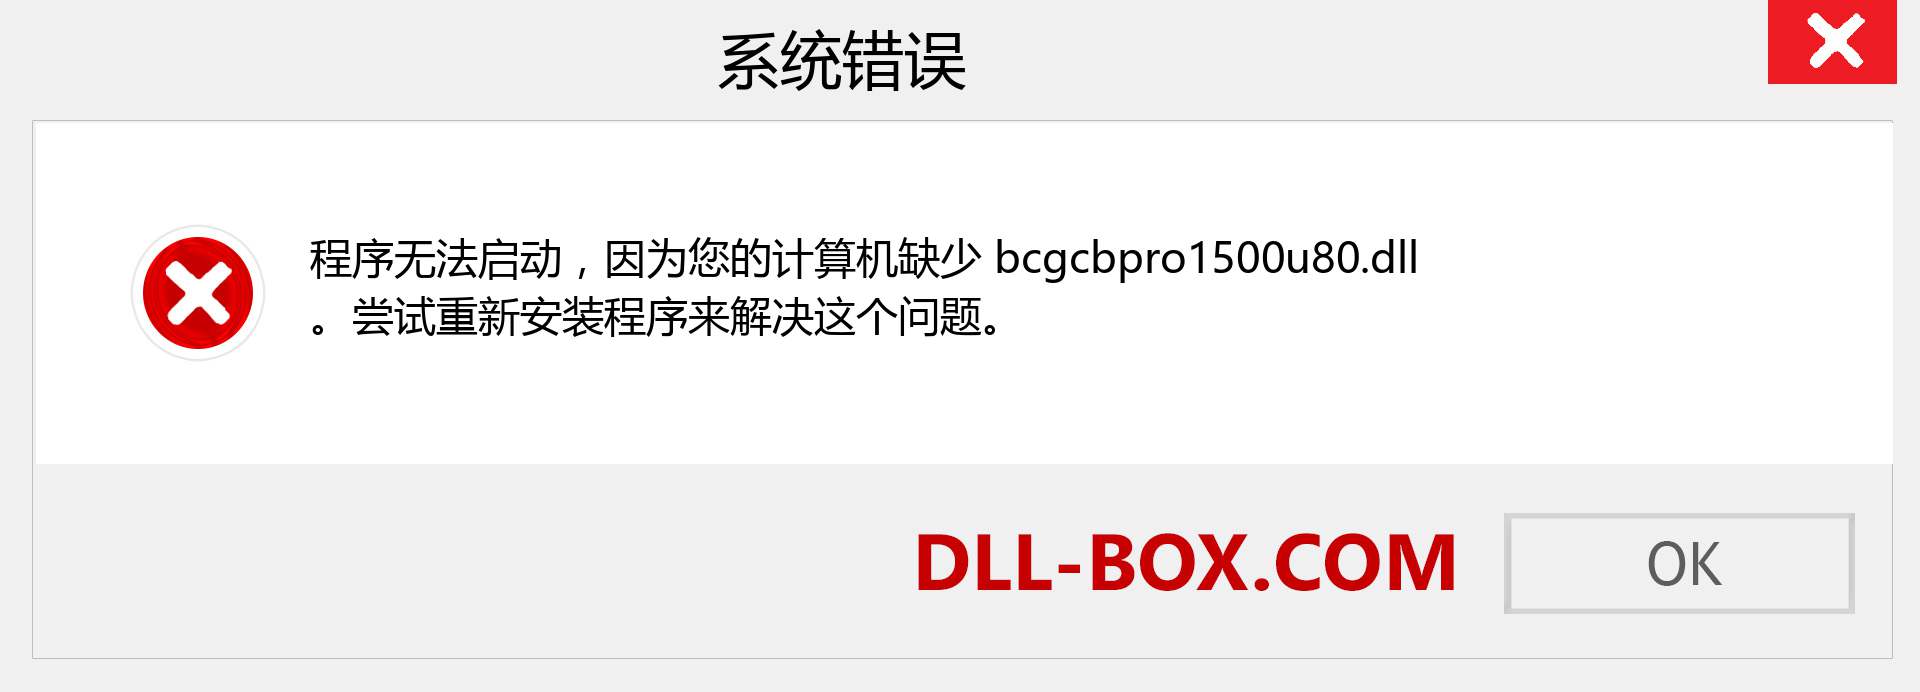 bcgcbpro1500u80.dll 文件丢失？。 适用于 Windows 7、8、10 的下载 - 修复 Windows、照片、图像上的 bcgcbpro1500u80 dll 丢失错误